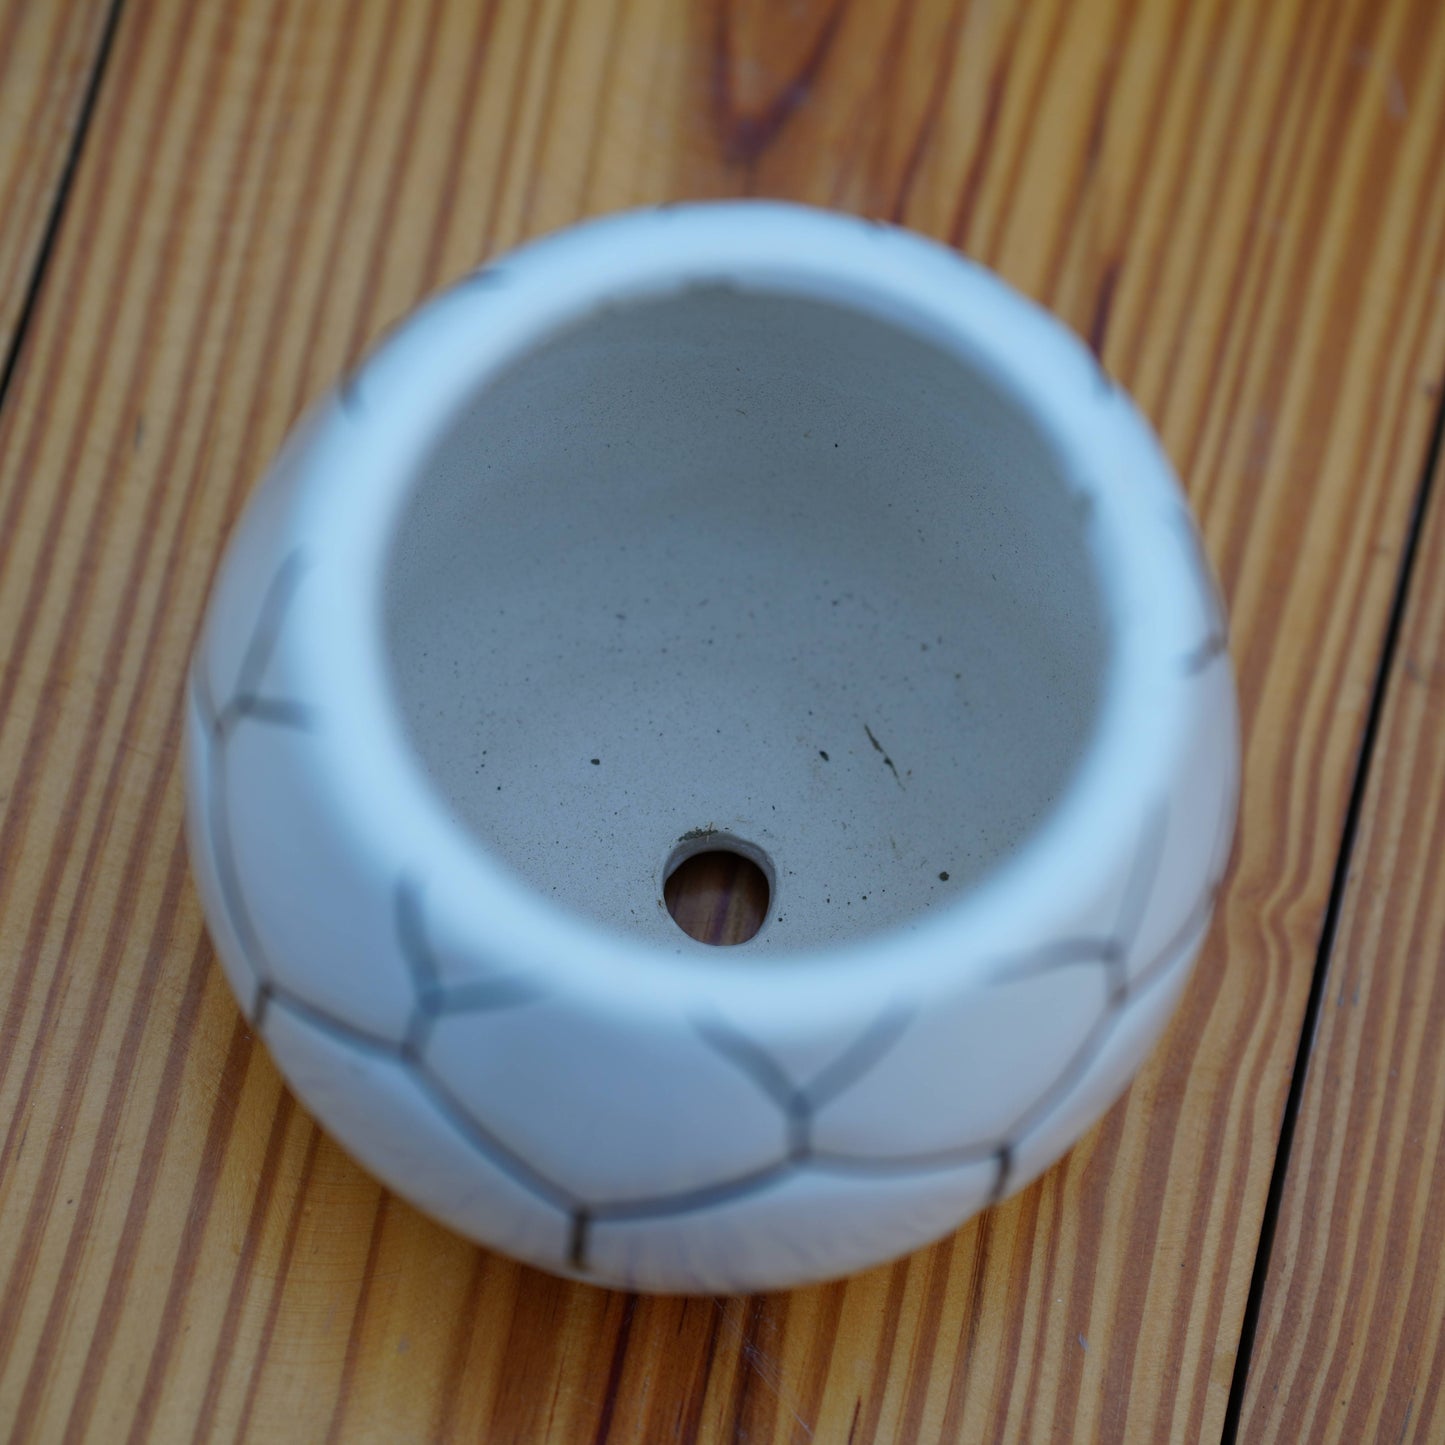 Ball Design Ceramic Planter